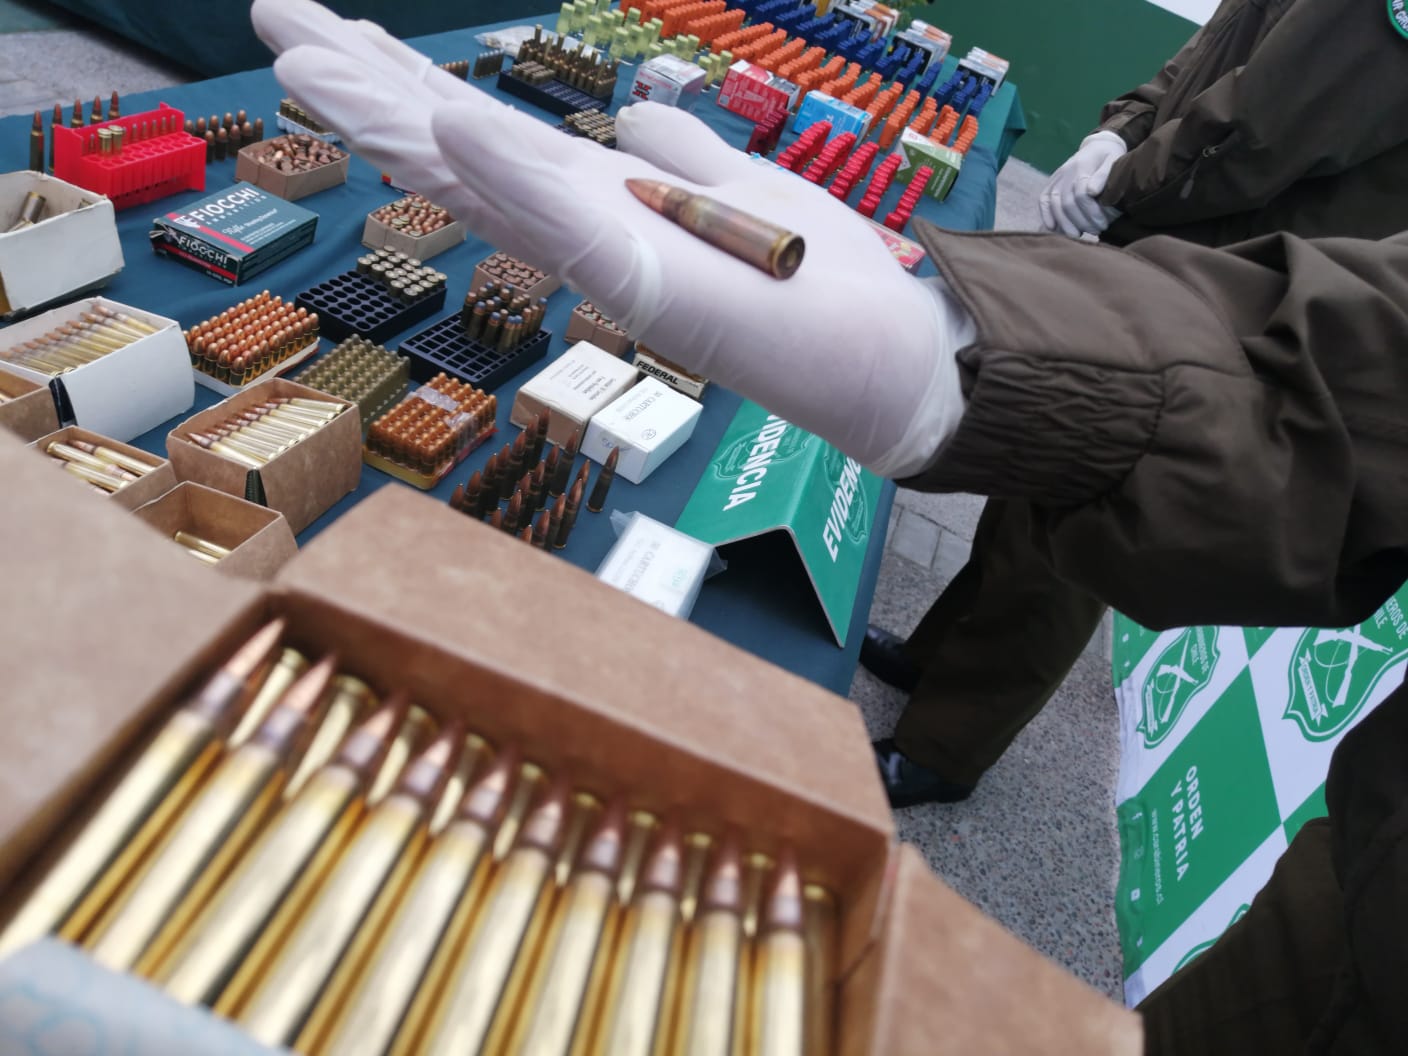 Más de 4000 municiones fueron sacadas de circulación por Carabineros en La Serena